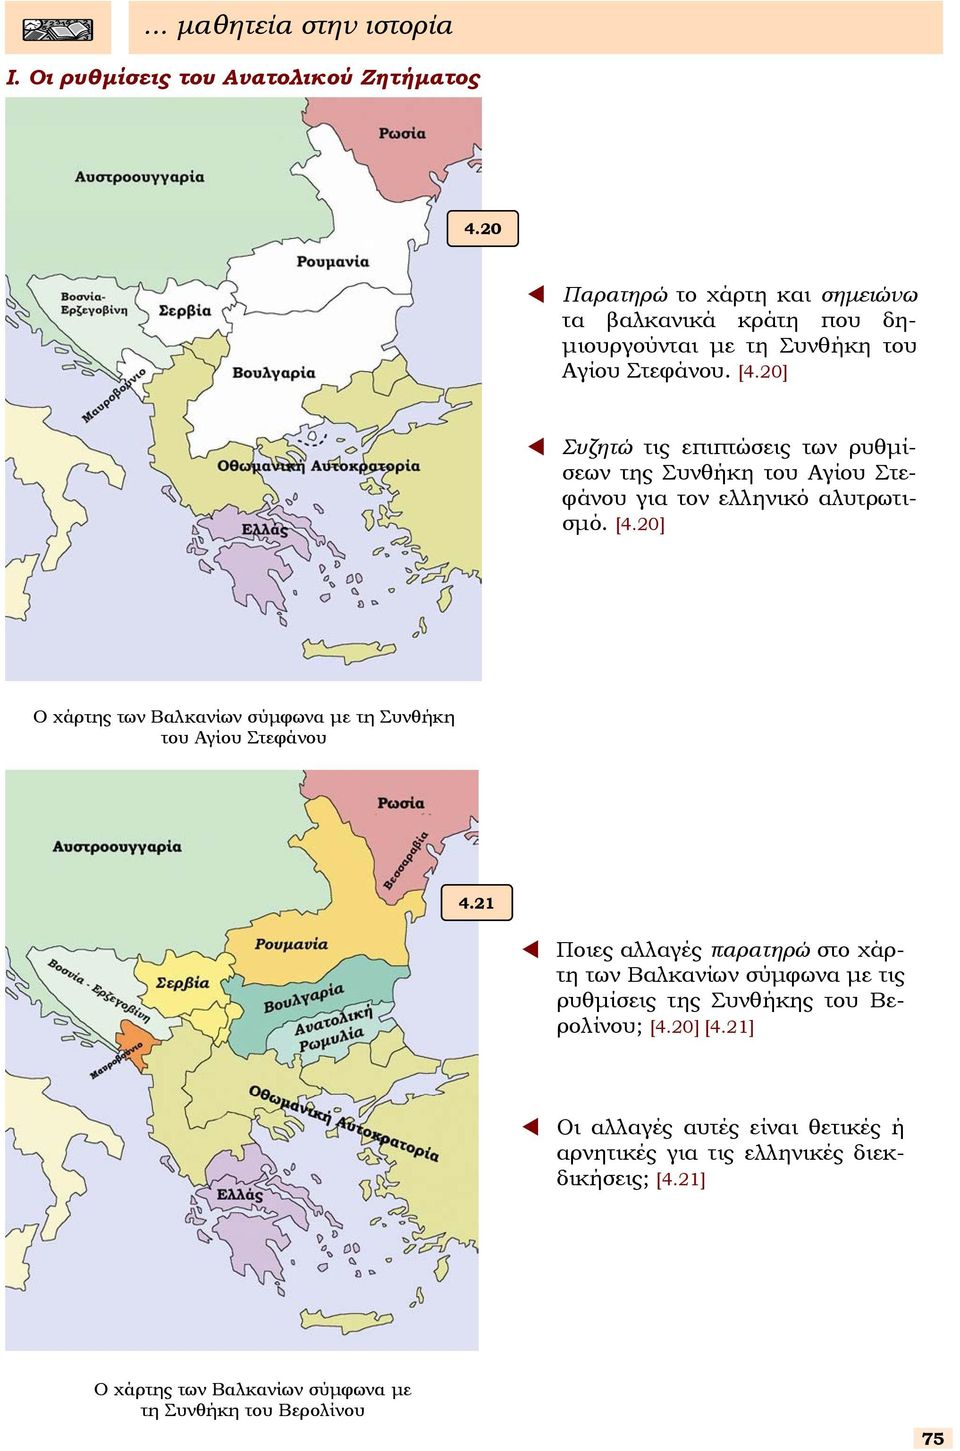 20] Συζητώ τις επιπτώεις των ρυθµίεων της Συνθήκη του Αγίου Στεφάνου για τον ελληνικό αλυτρωτιµό. [4.